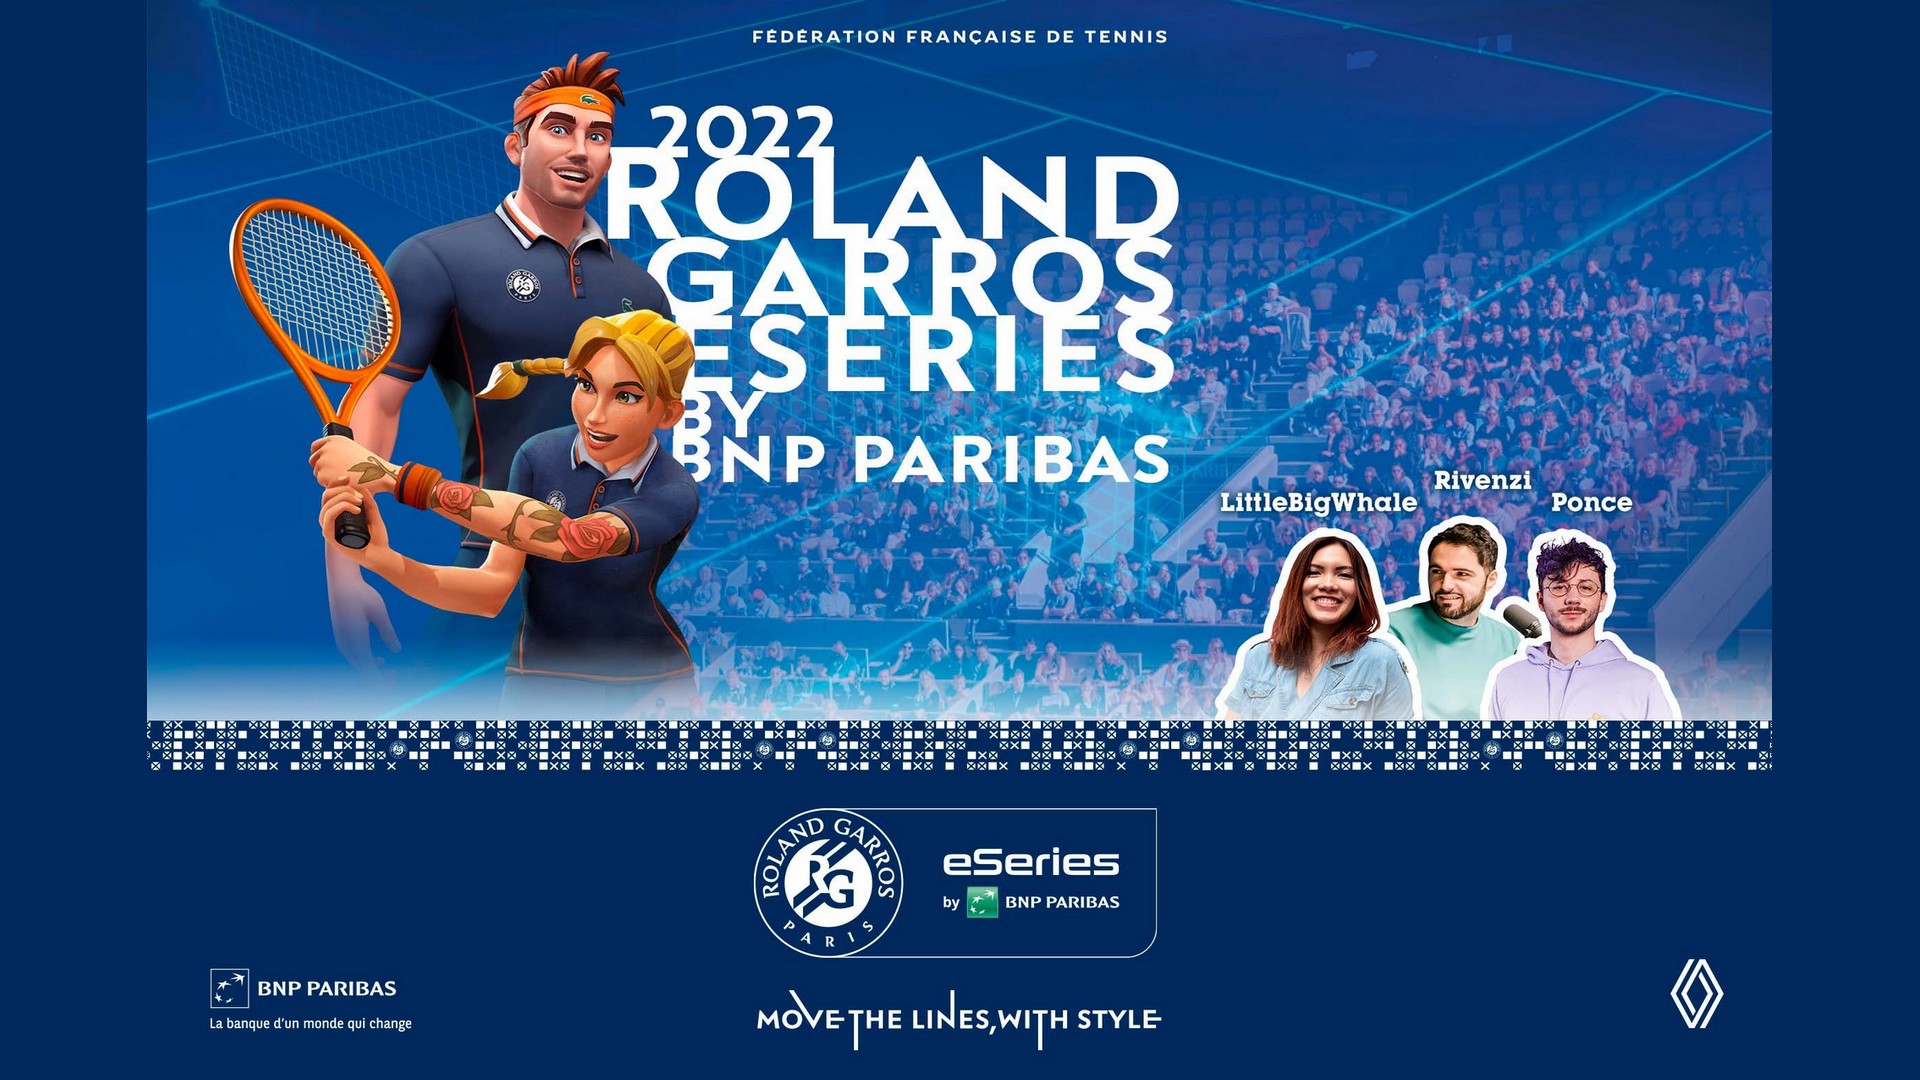 eSeries de Roland-Garros by BNP Paribas